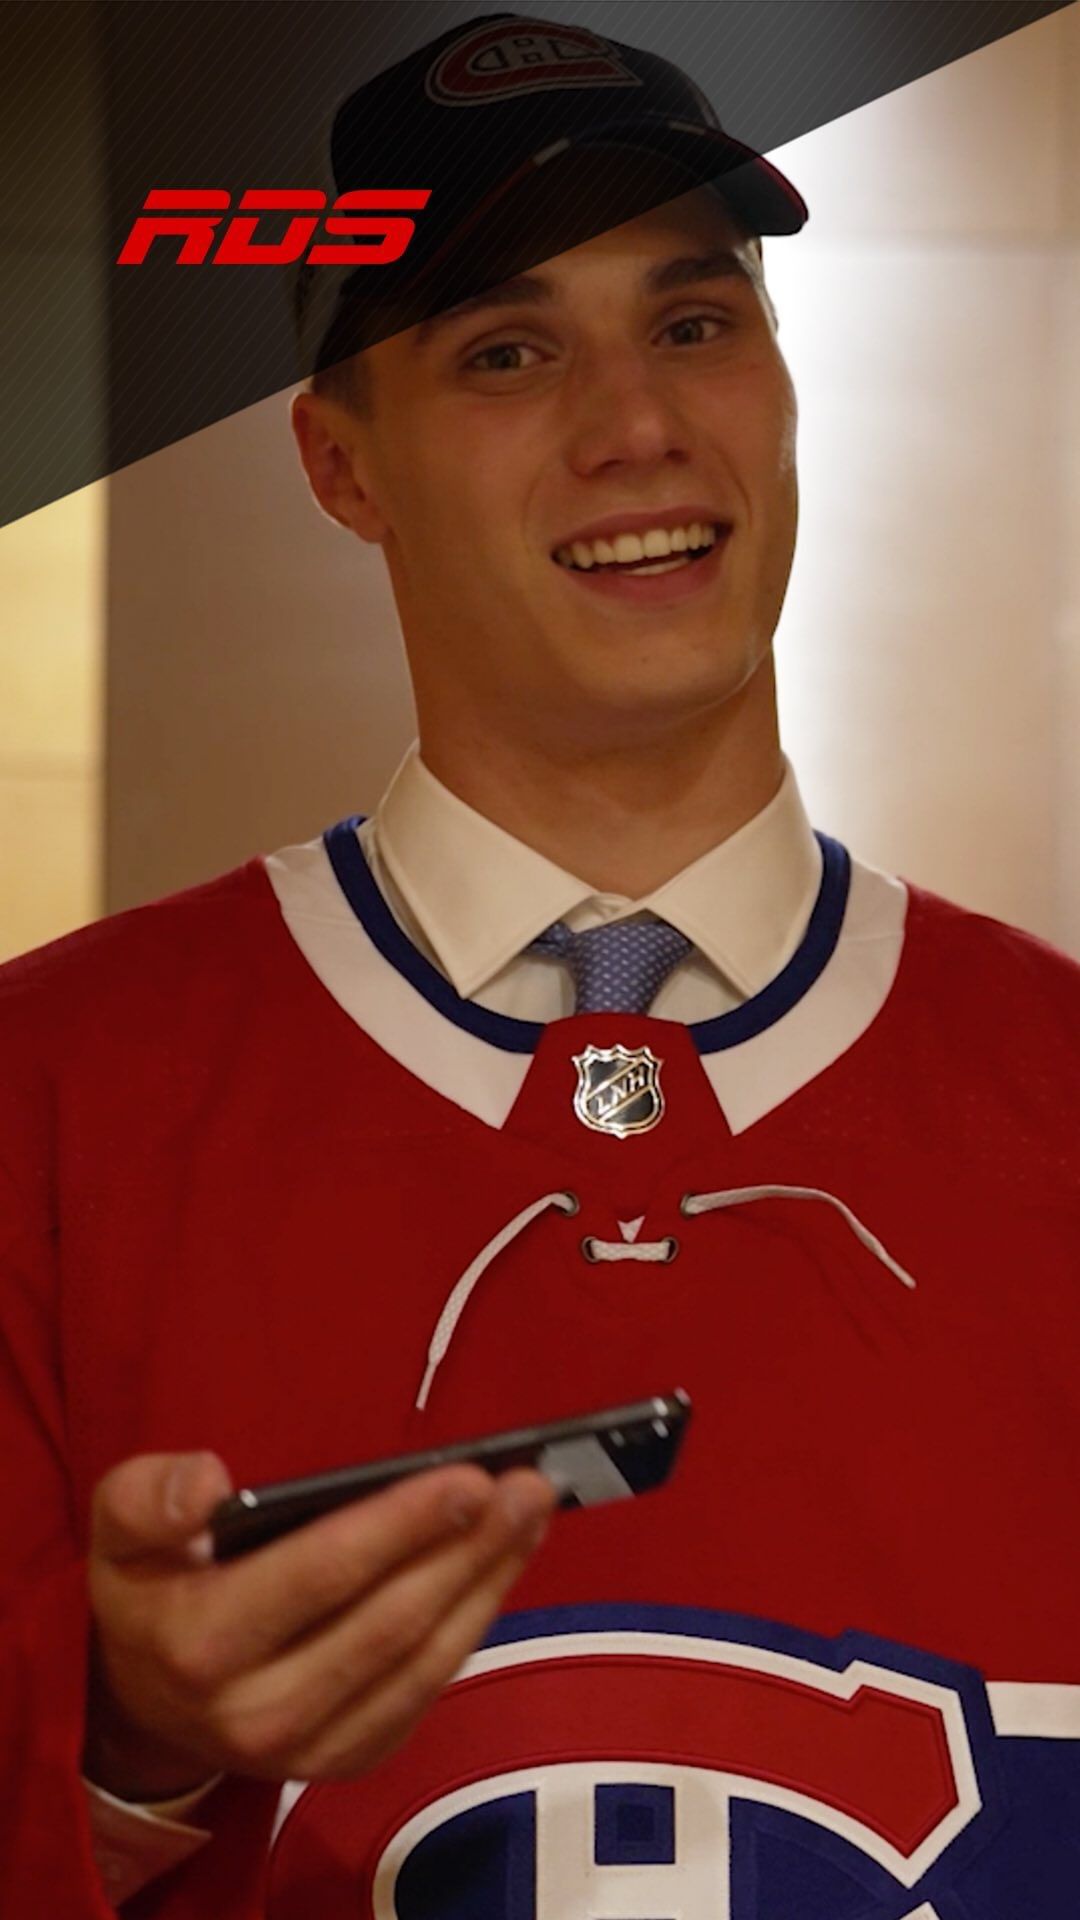 Juraj Slafkovsky a envie de vivre la rivalité Leafs-Canadiens.  @_slafkovsky_ wa...